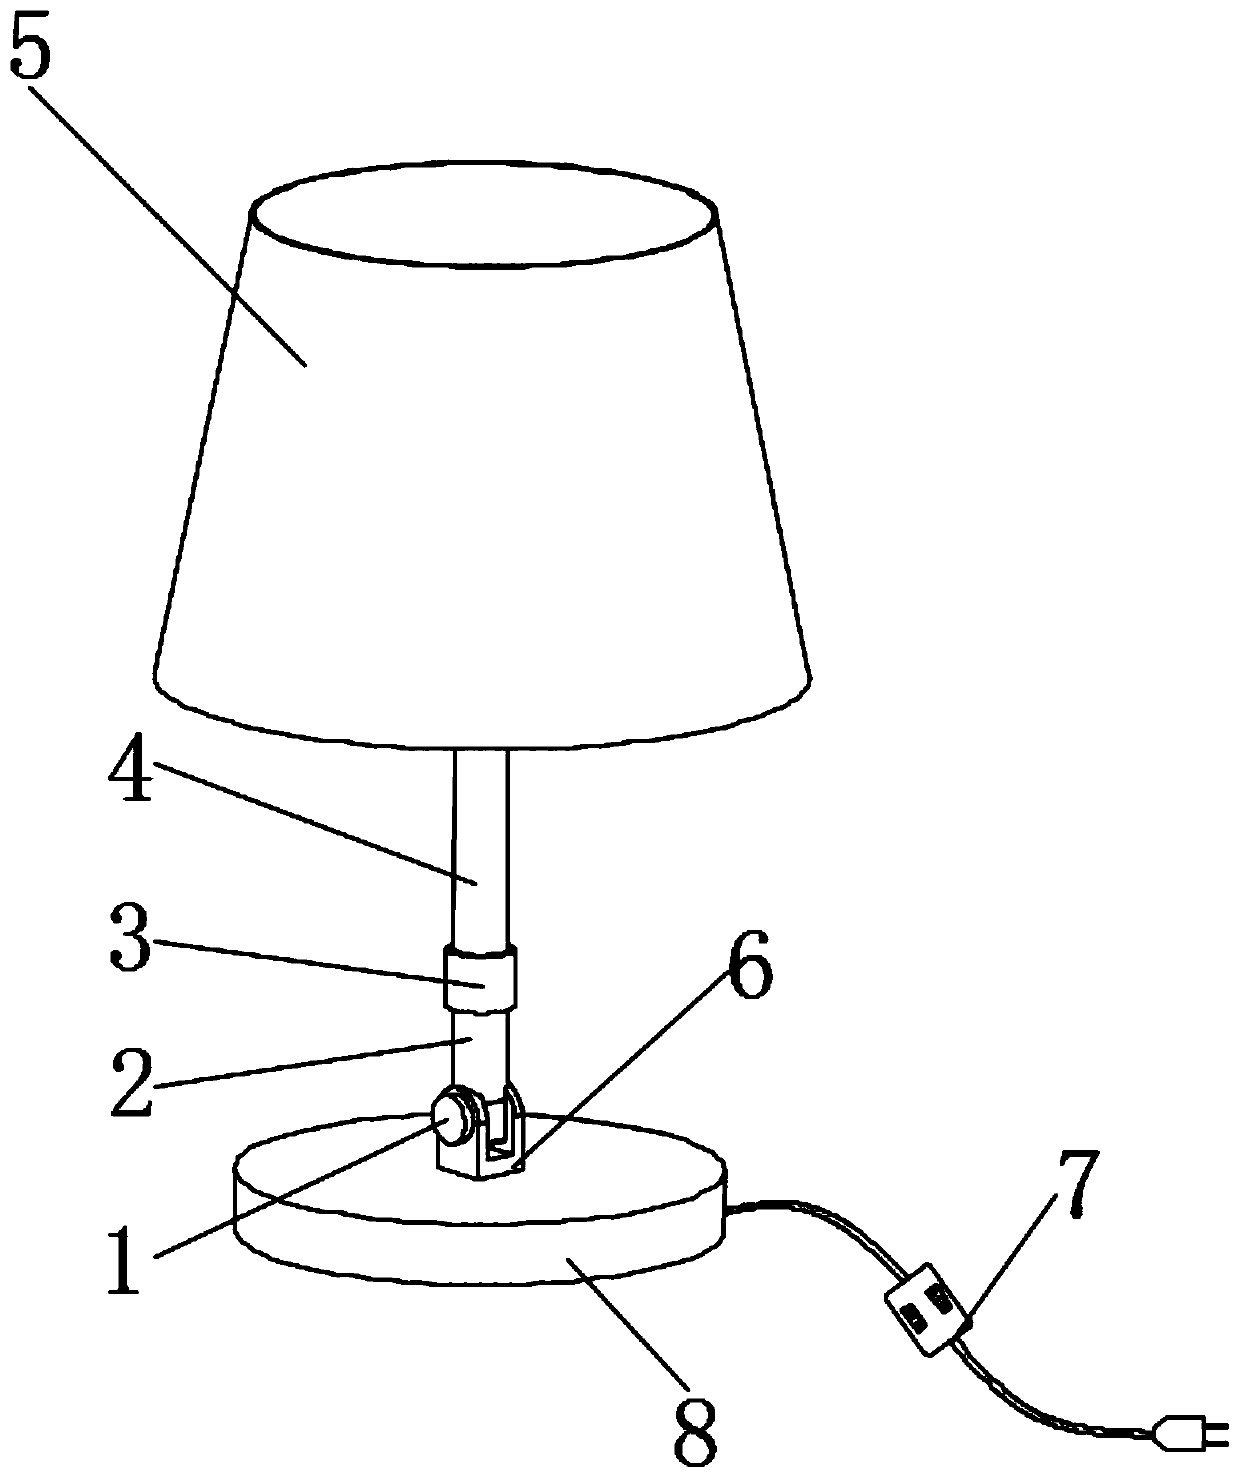 LED bedside lamp capable of adjusting lighting range